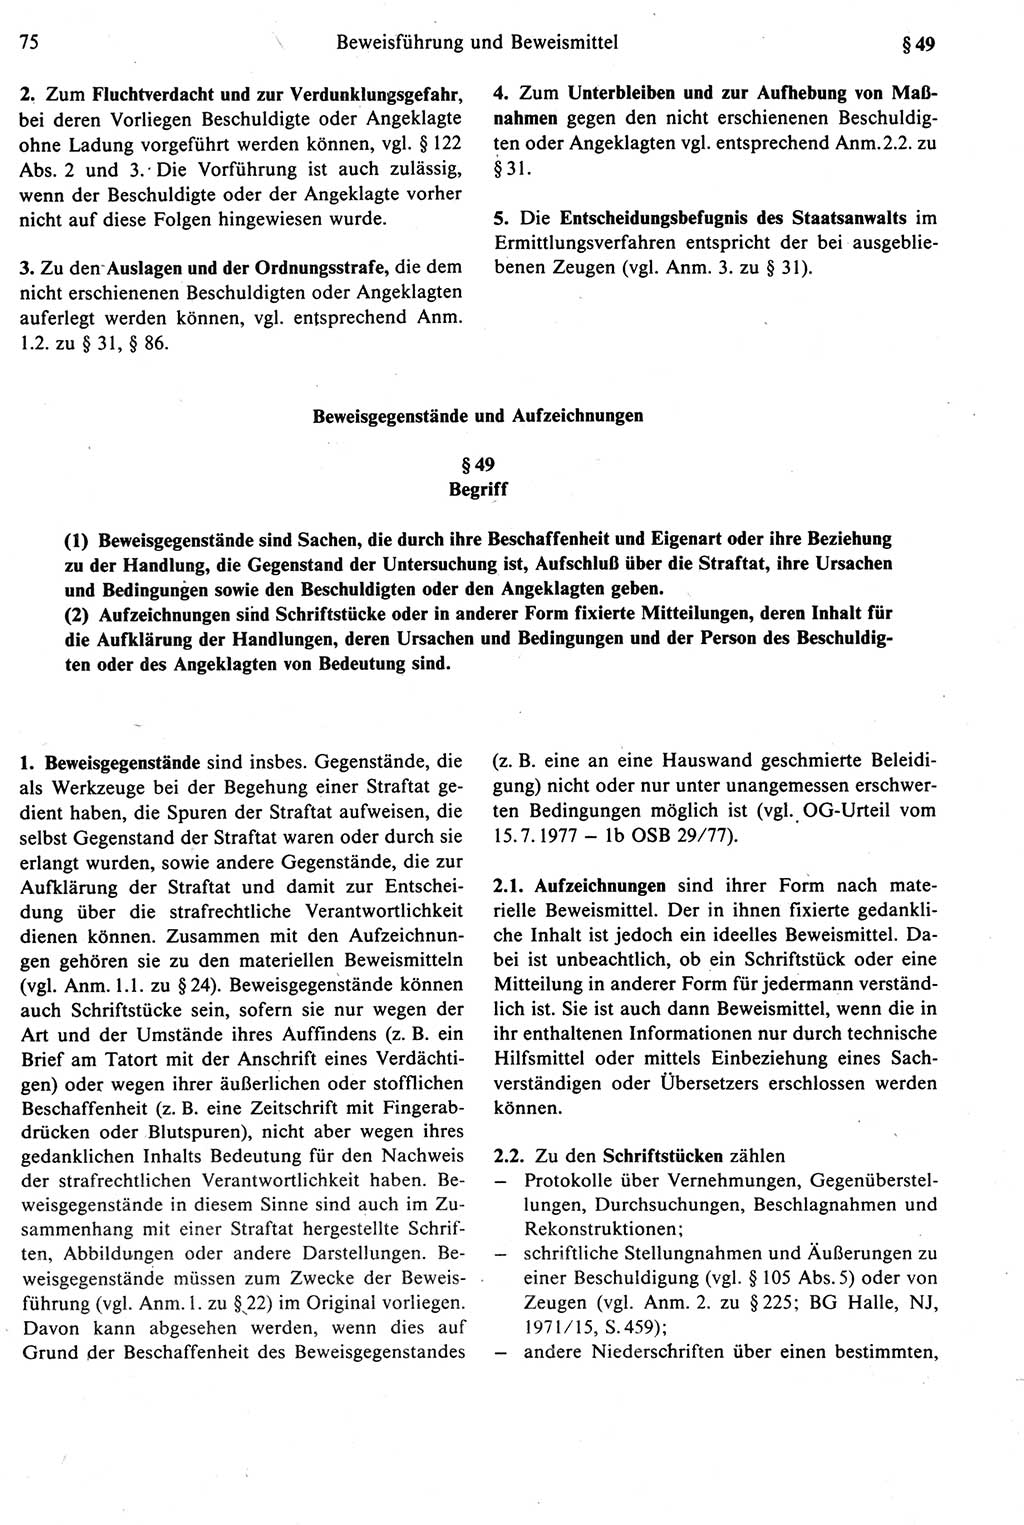 Strafprozeßrecht der DDR [Deutsche Demokratische Republik], Kommentar zur Strafprozeßordnung (StPO) 1987, Seite 75 (Strafprozeßr. DDR Komm. StPO 1987, S. 75)